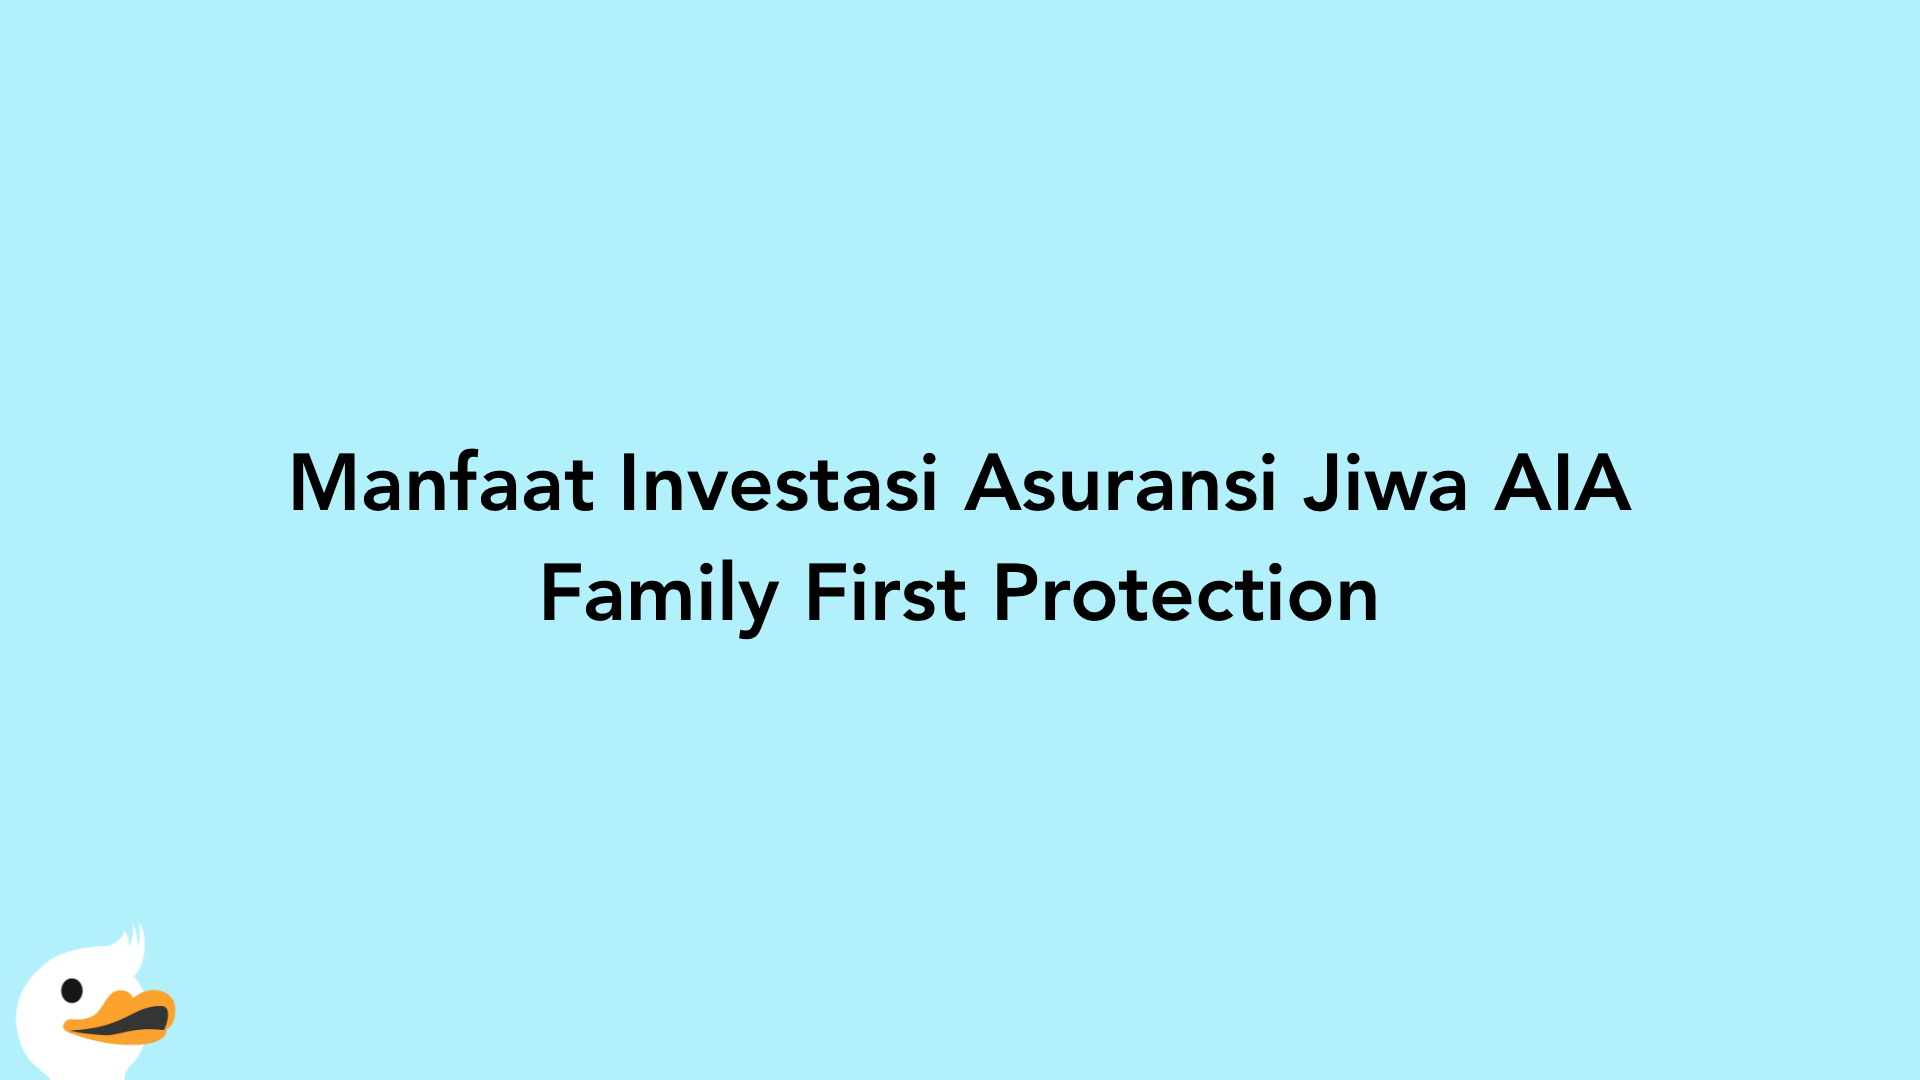 Manfaat Investasi Asuransi Jiwa AIA Family First Protection